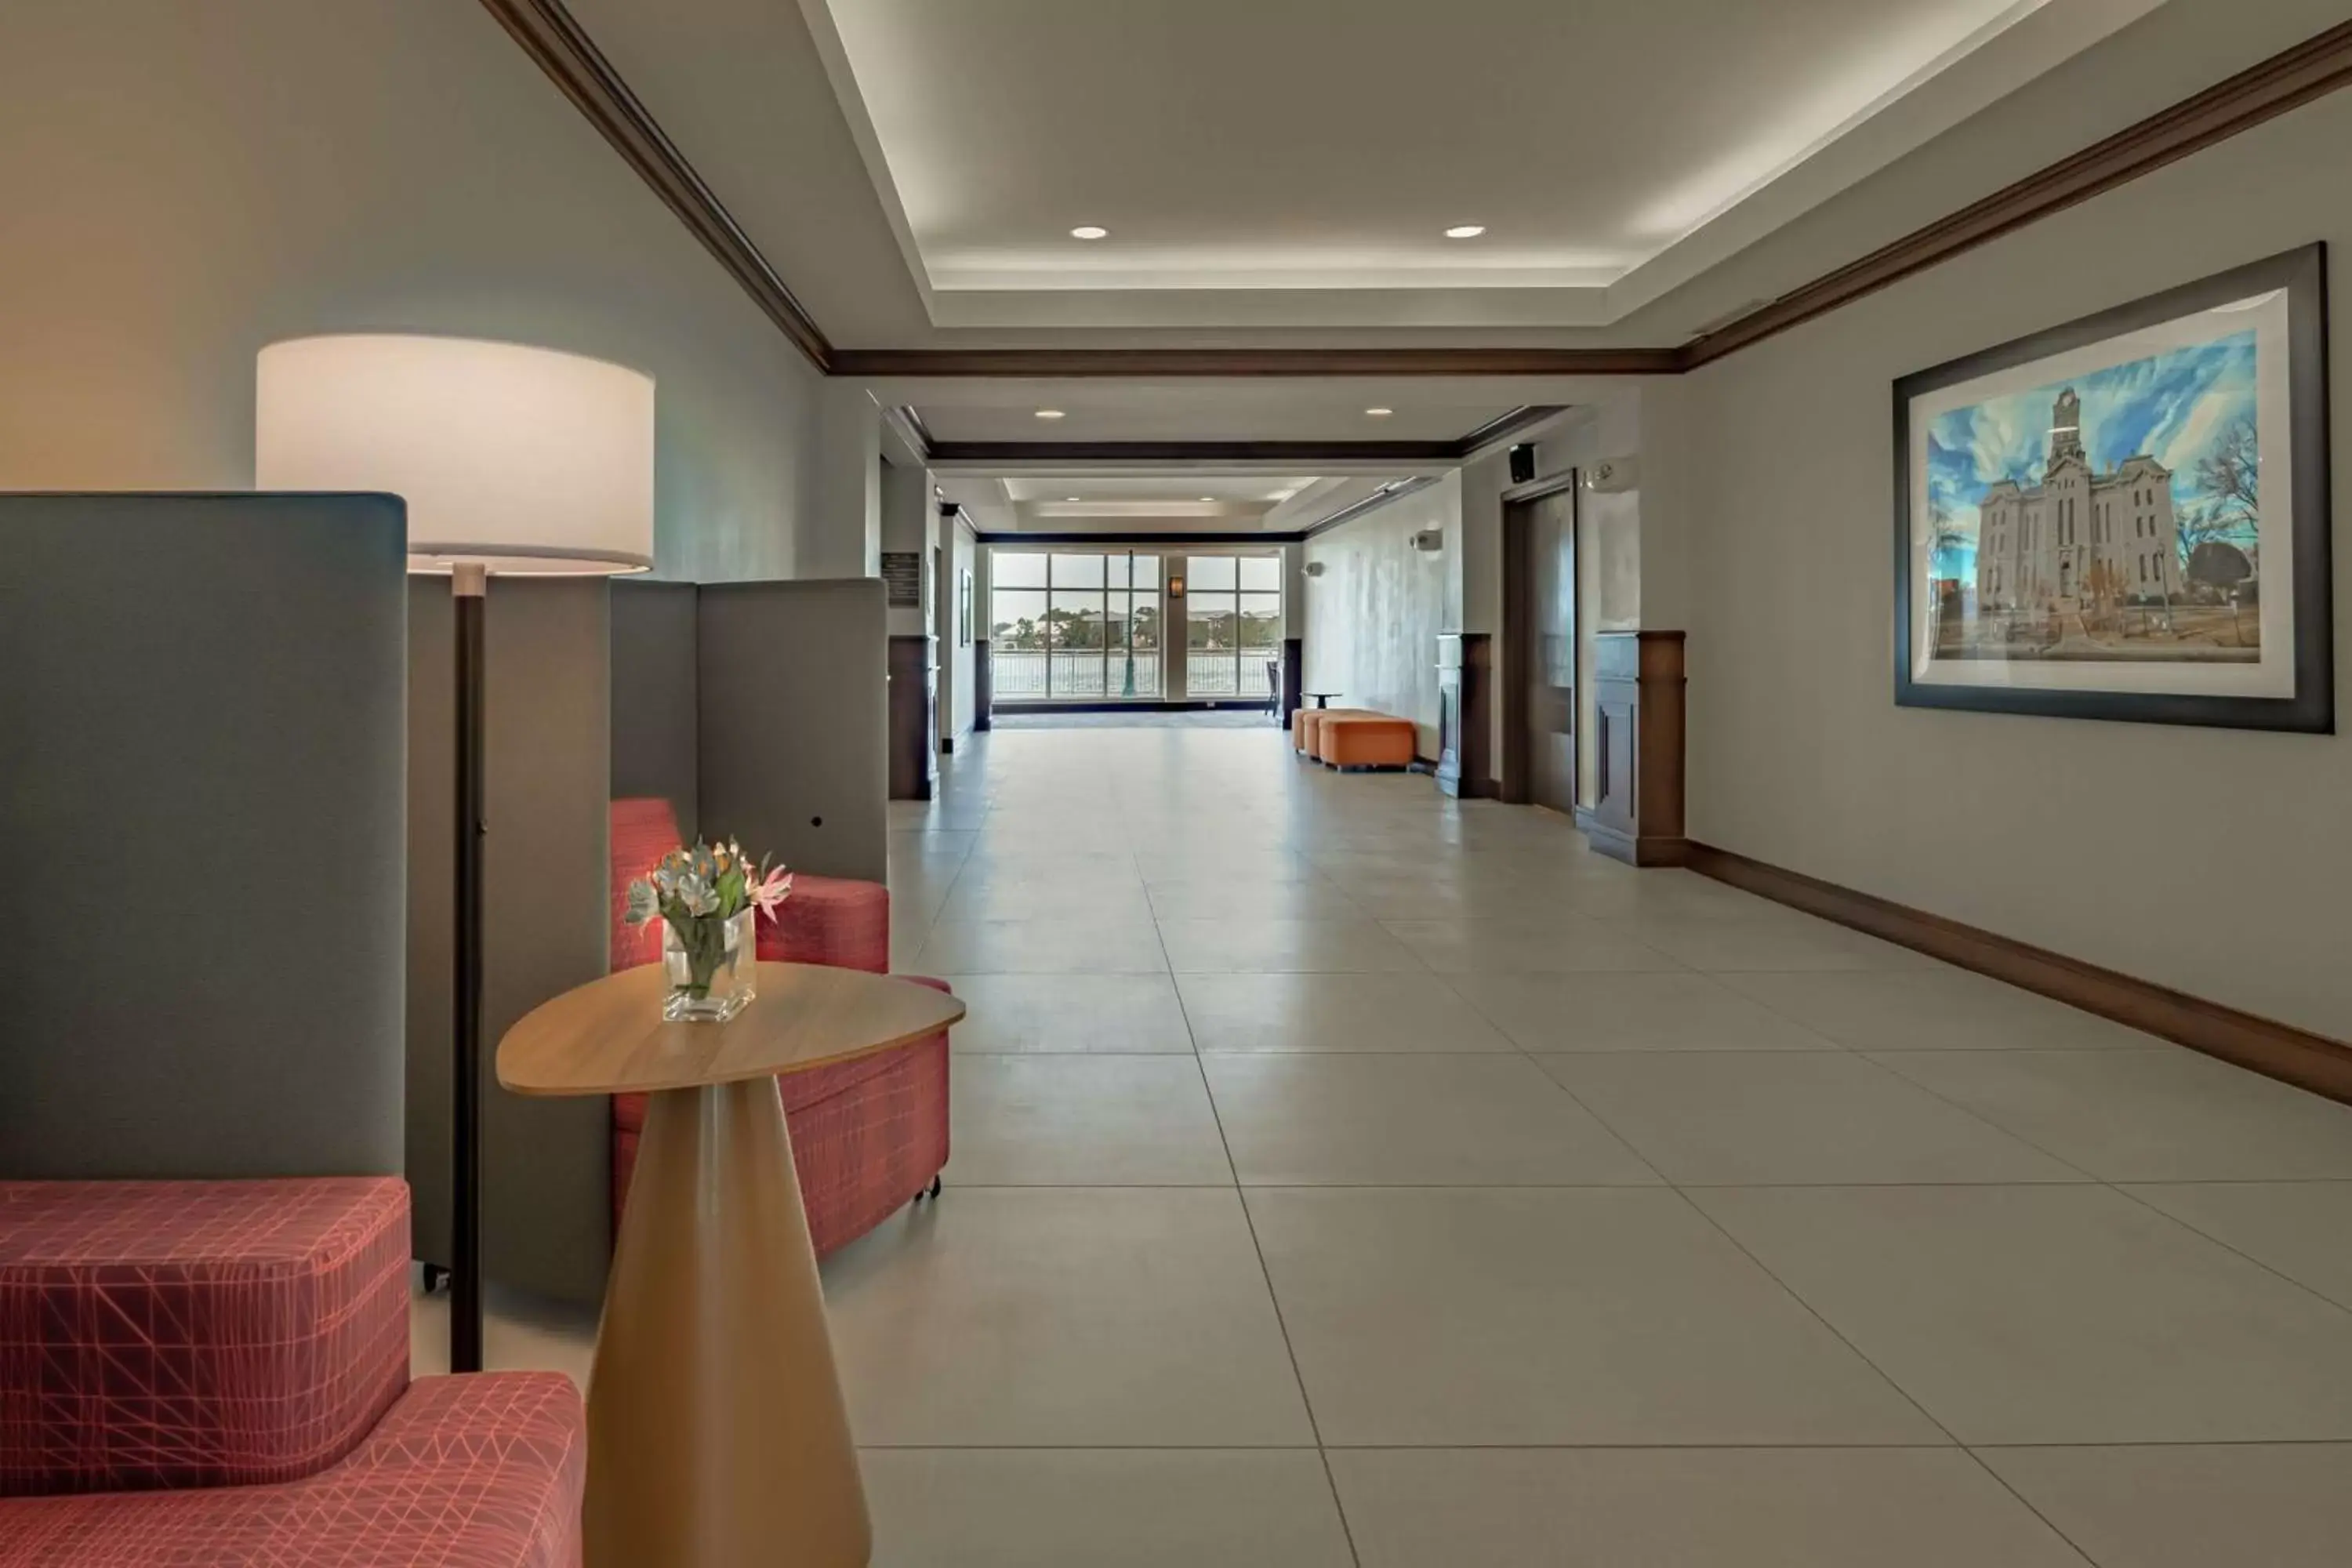 Lobby or reception, Lobby/Reception in Hilton Garden Inn Granbury